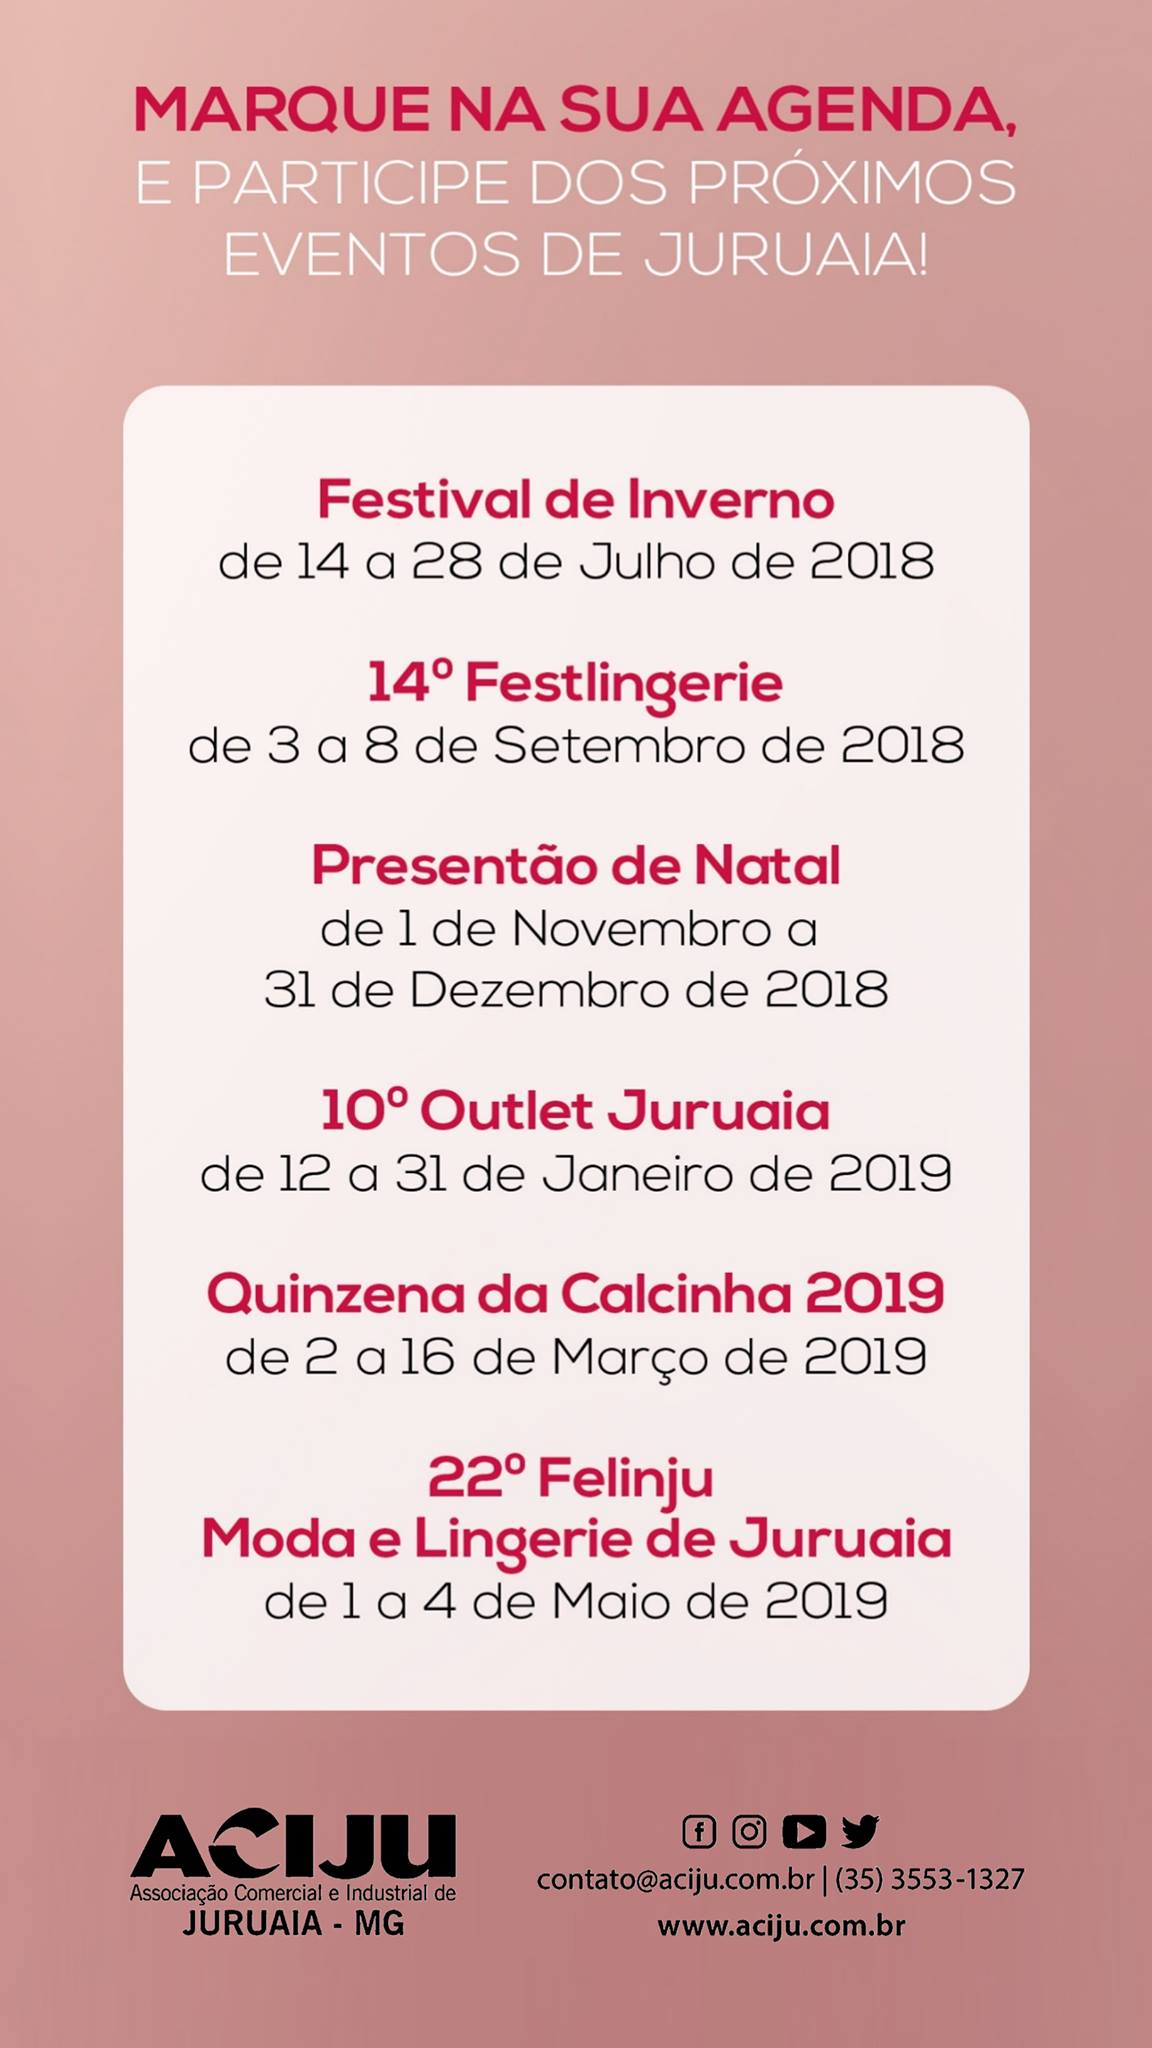 Feiras e eventos de moda intima e lingerie organizados pela Aciju em Juruaia (Felinju, Festlingerie, Outlet)